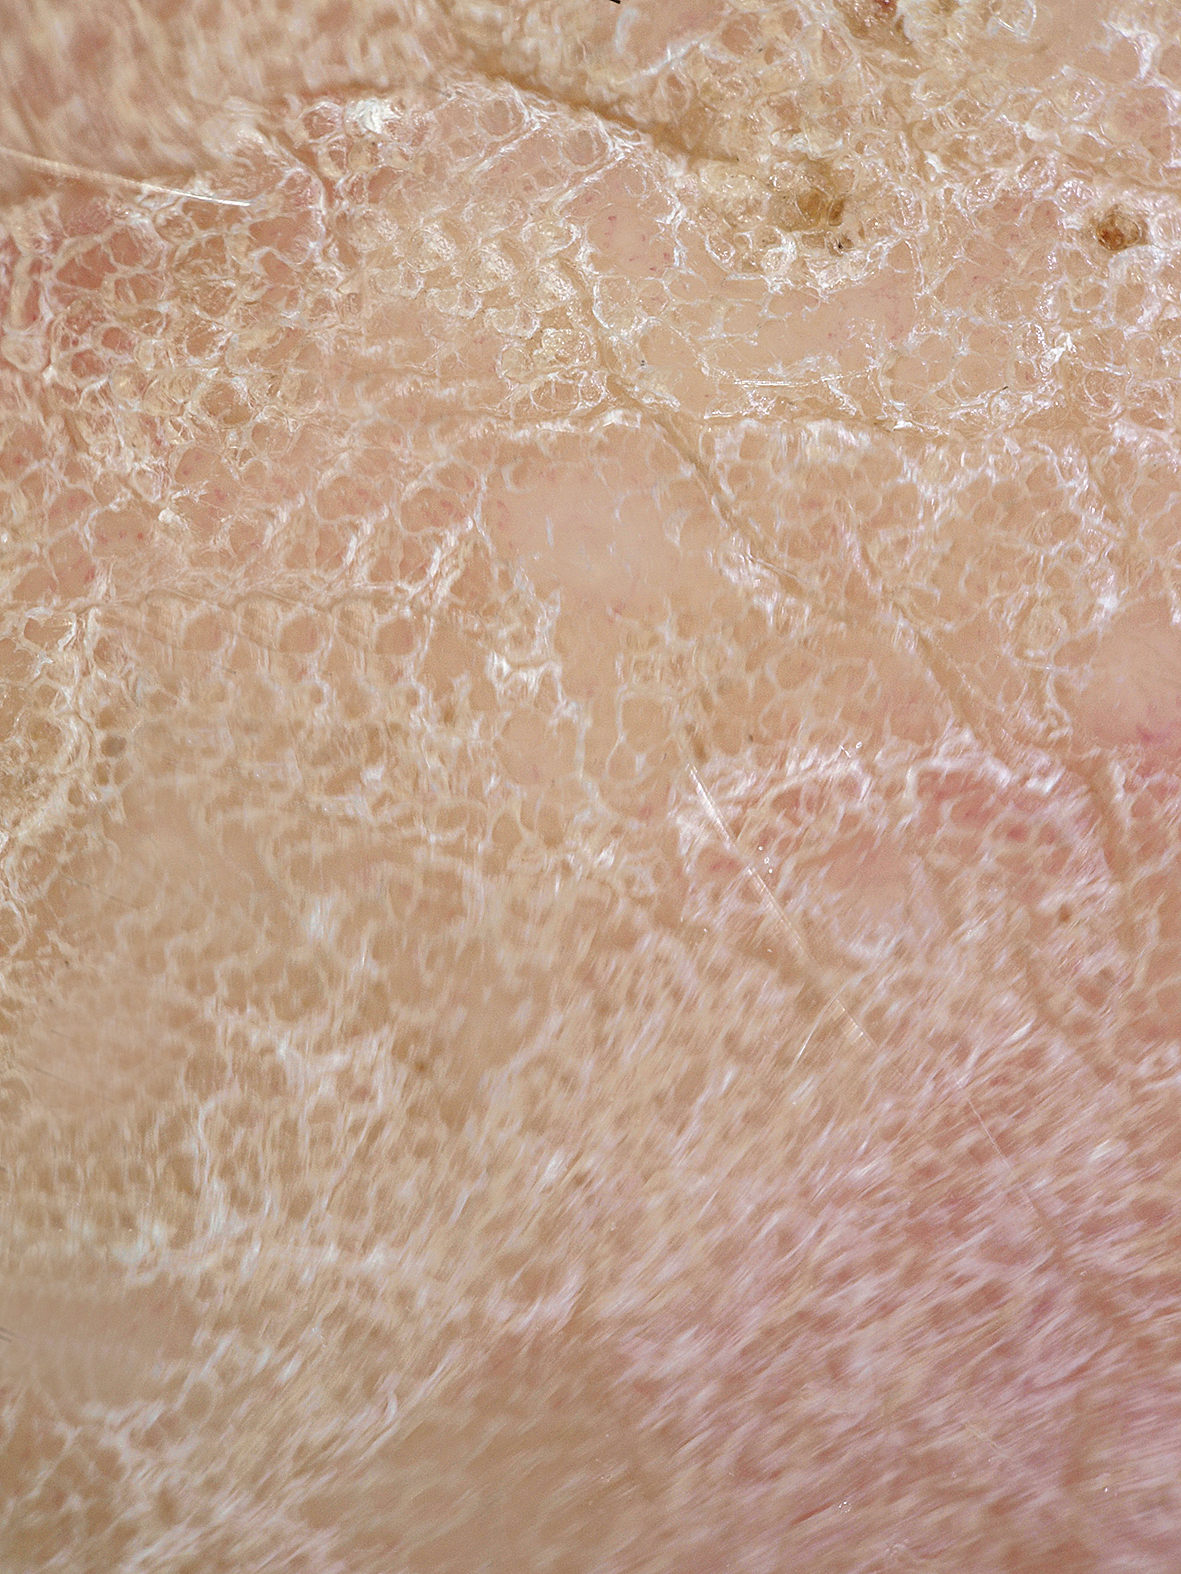 Plaukstas palmārās virsmas hiperkeratozes dermoskopijas aina